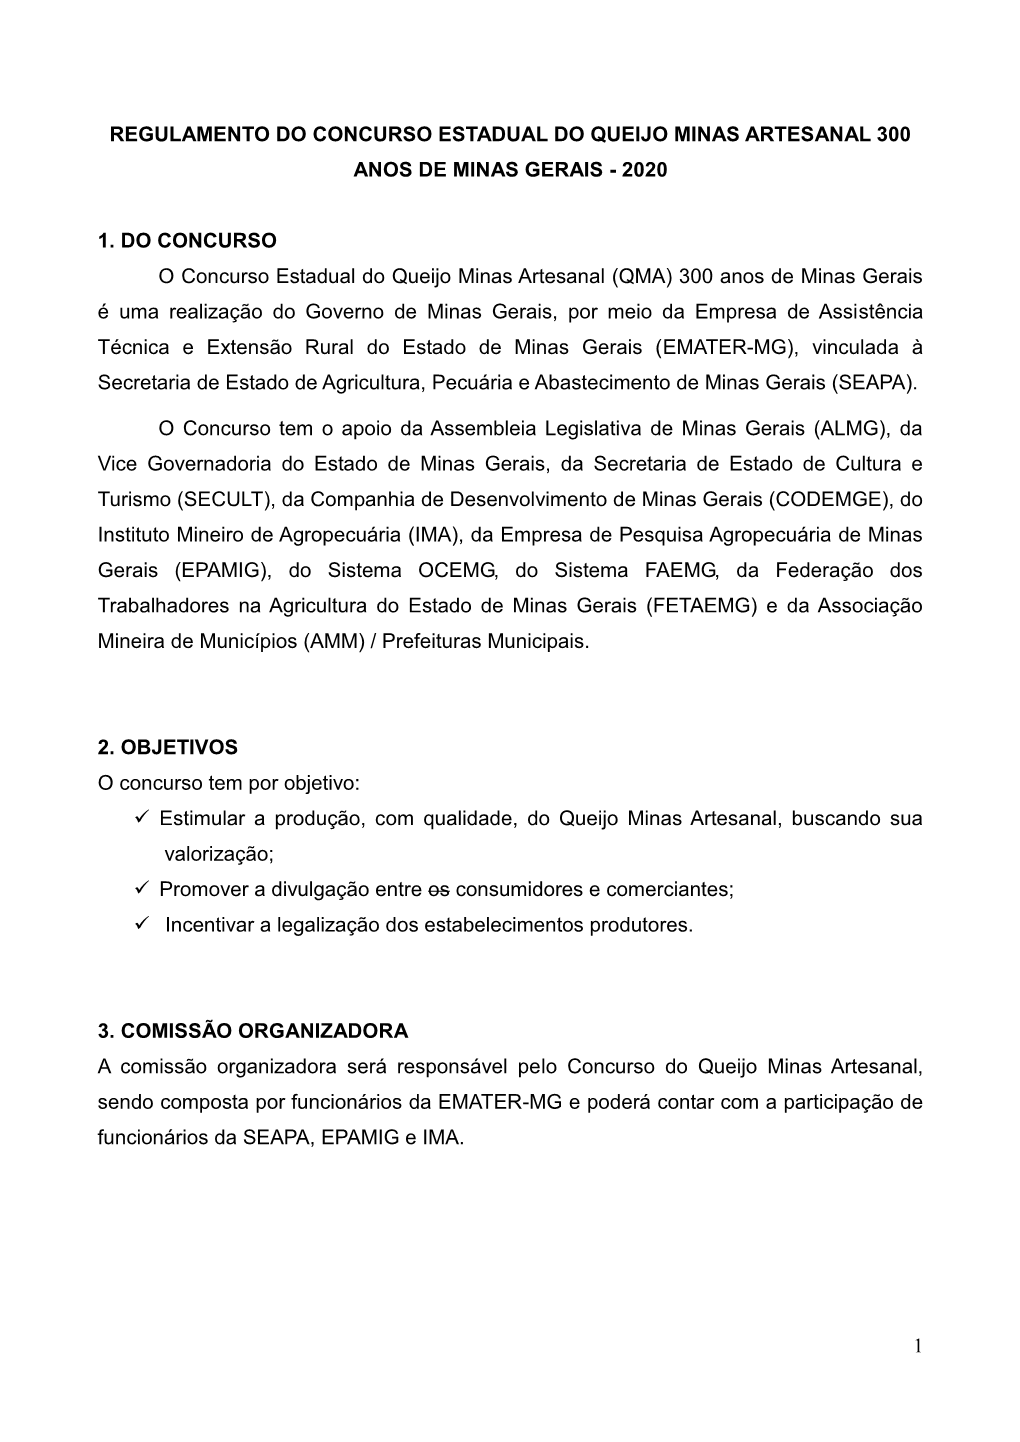 Regulamento Do Concurso Estadual Do Queijo Minas Artesanal 300 Anos De Minas Gerais - 2020